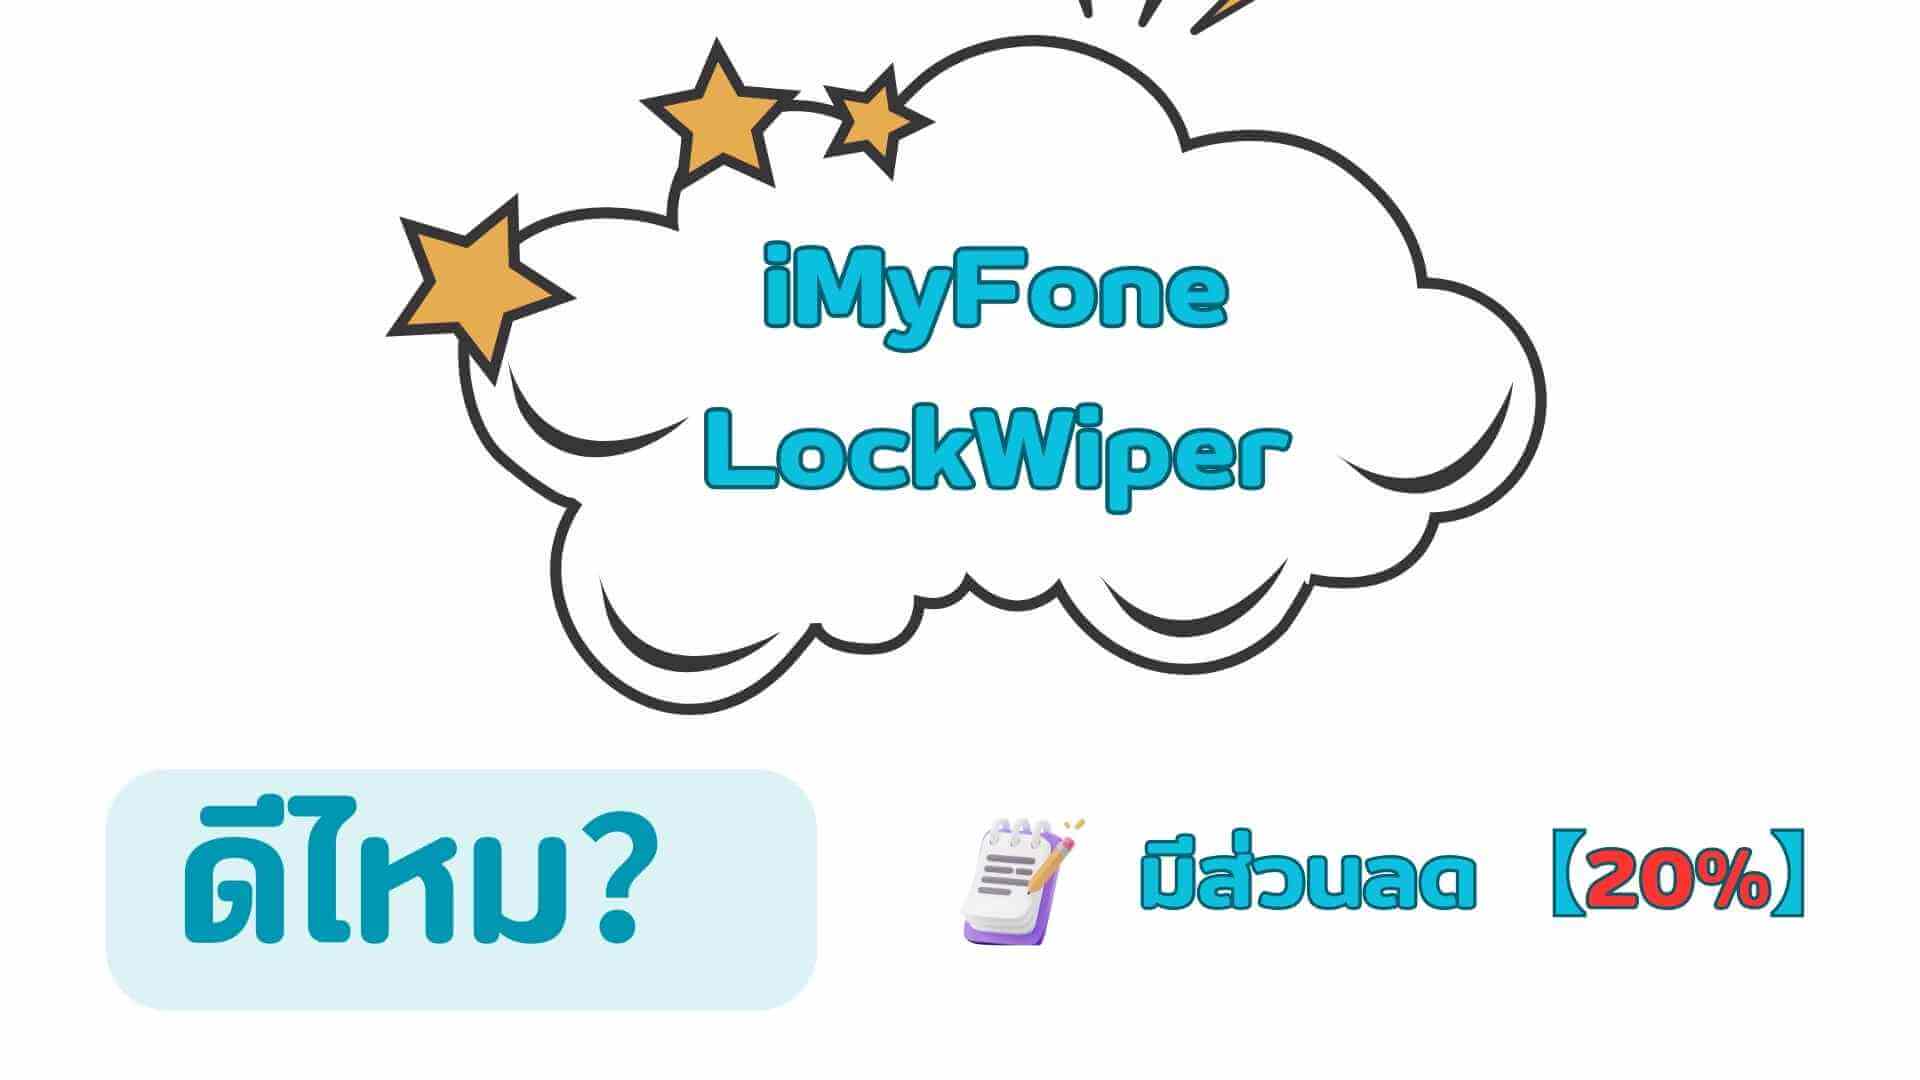 iMyFone LockWiper ดีไหม? ทำไมถึงเป็นที่นิยม? มาดูรีวิวจากผู้ใช้งานจริง!